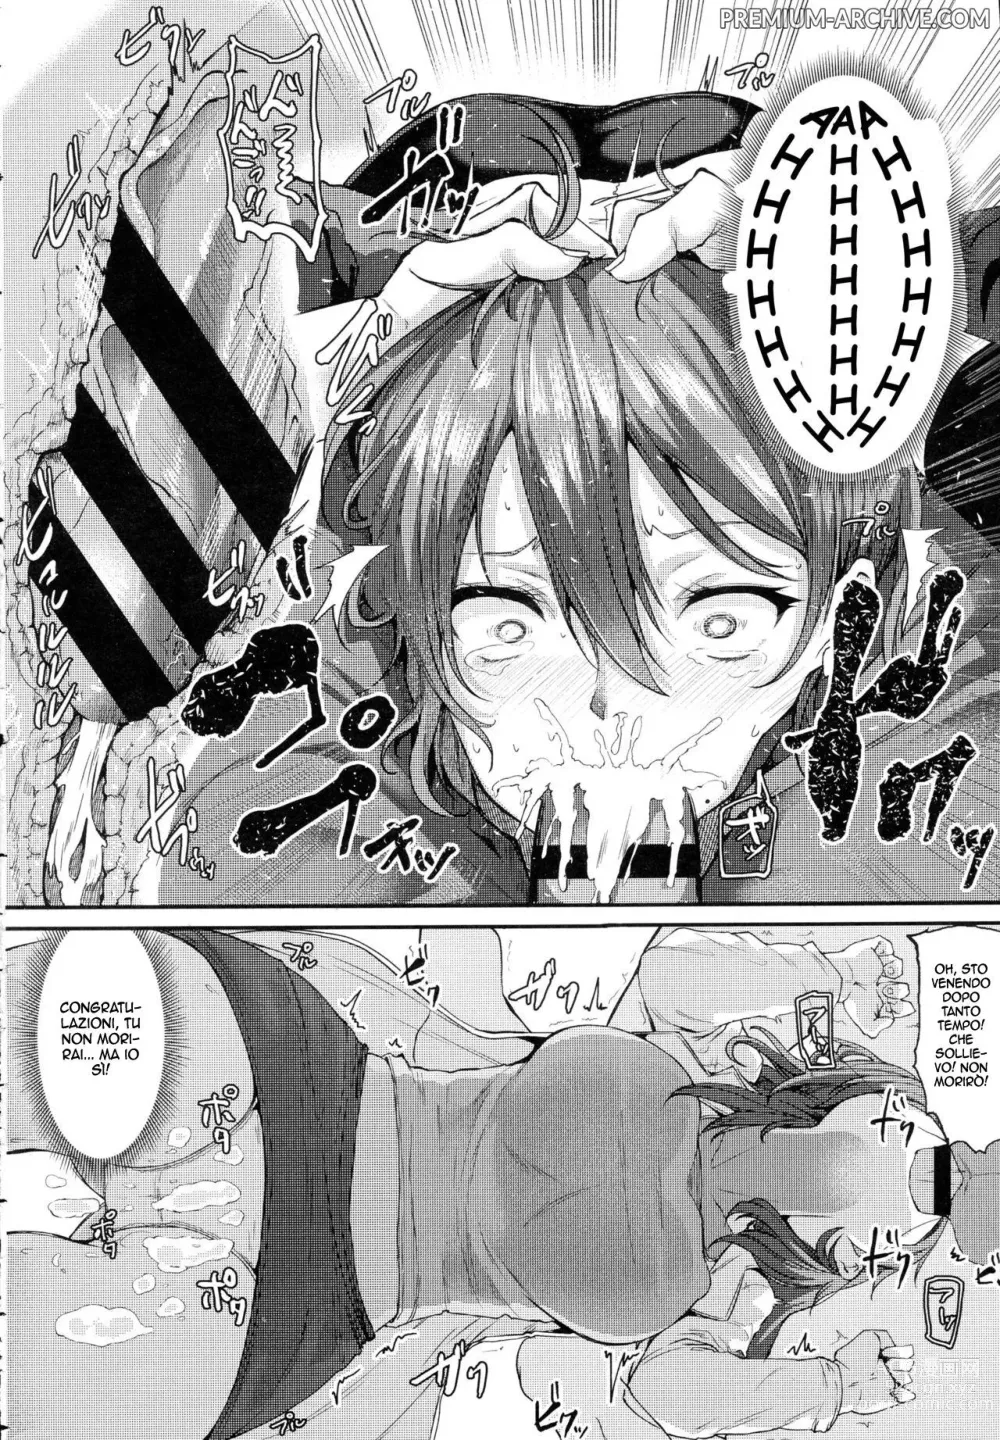 Page 12 of manga Goditela!